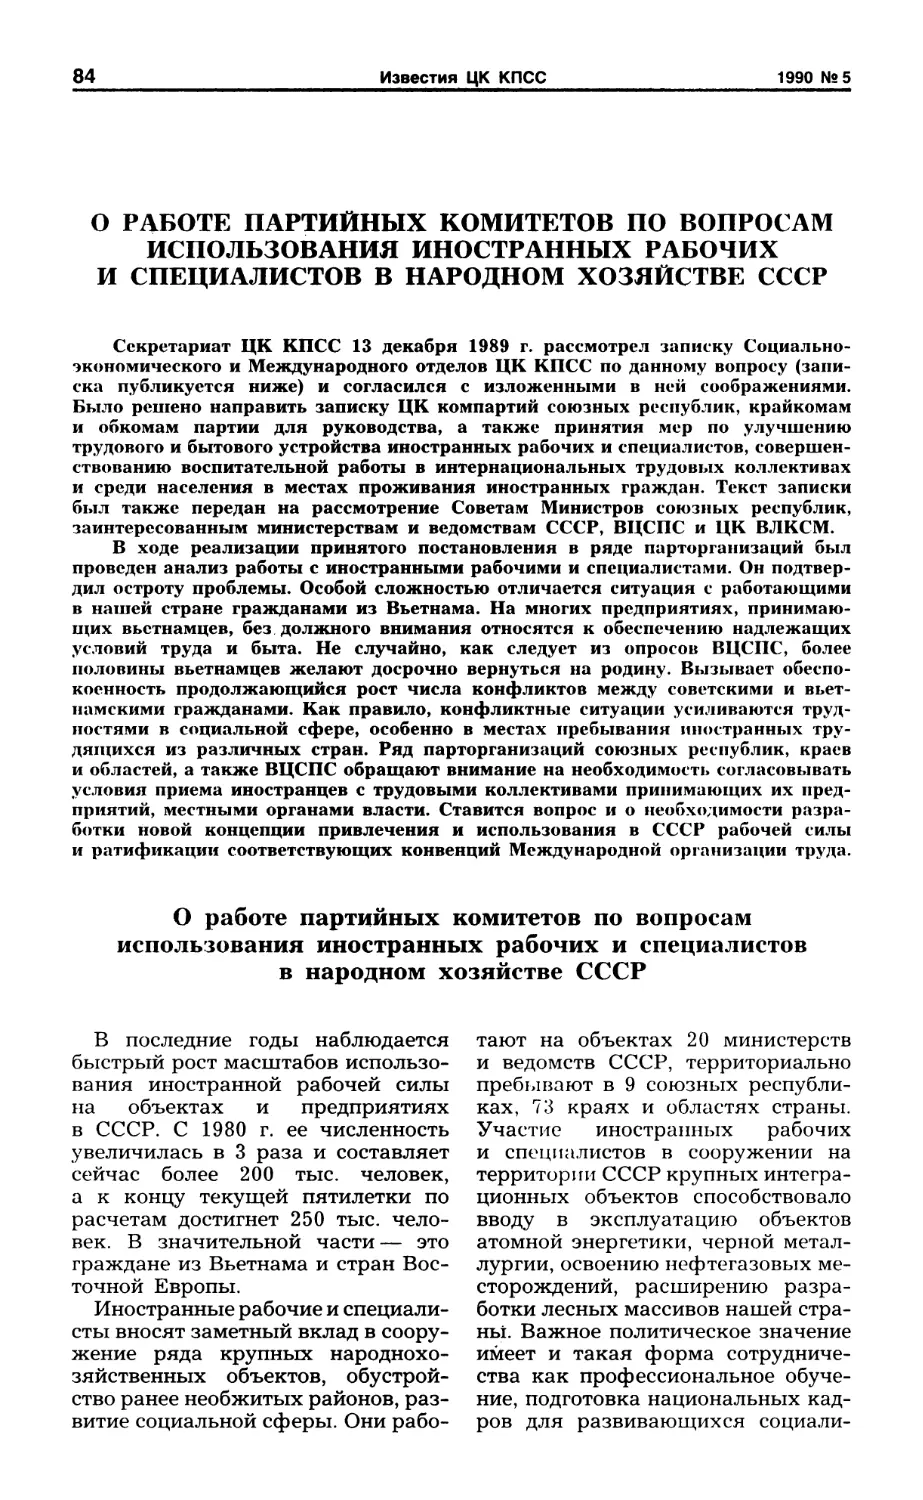 О работе партийных комитетов по вопросам использования иностранных рабочих и специалистов в народном хозяйстве СССР